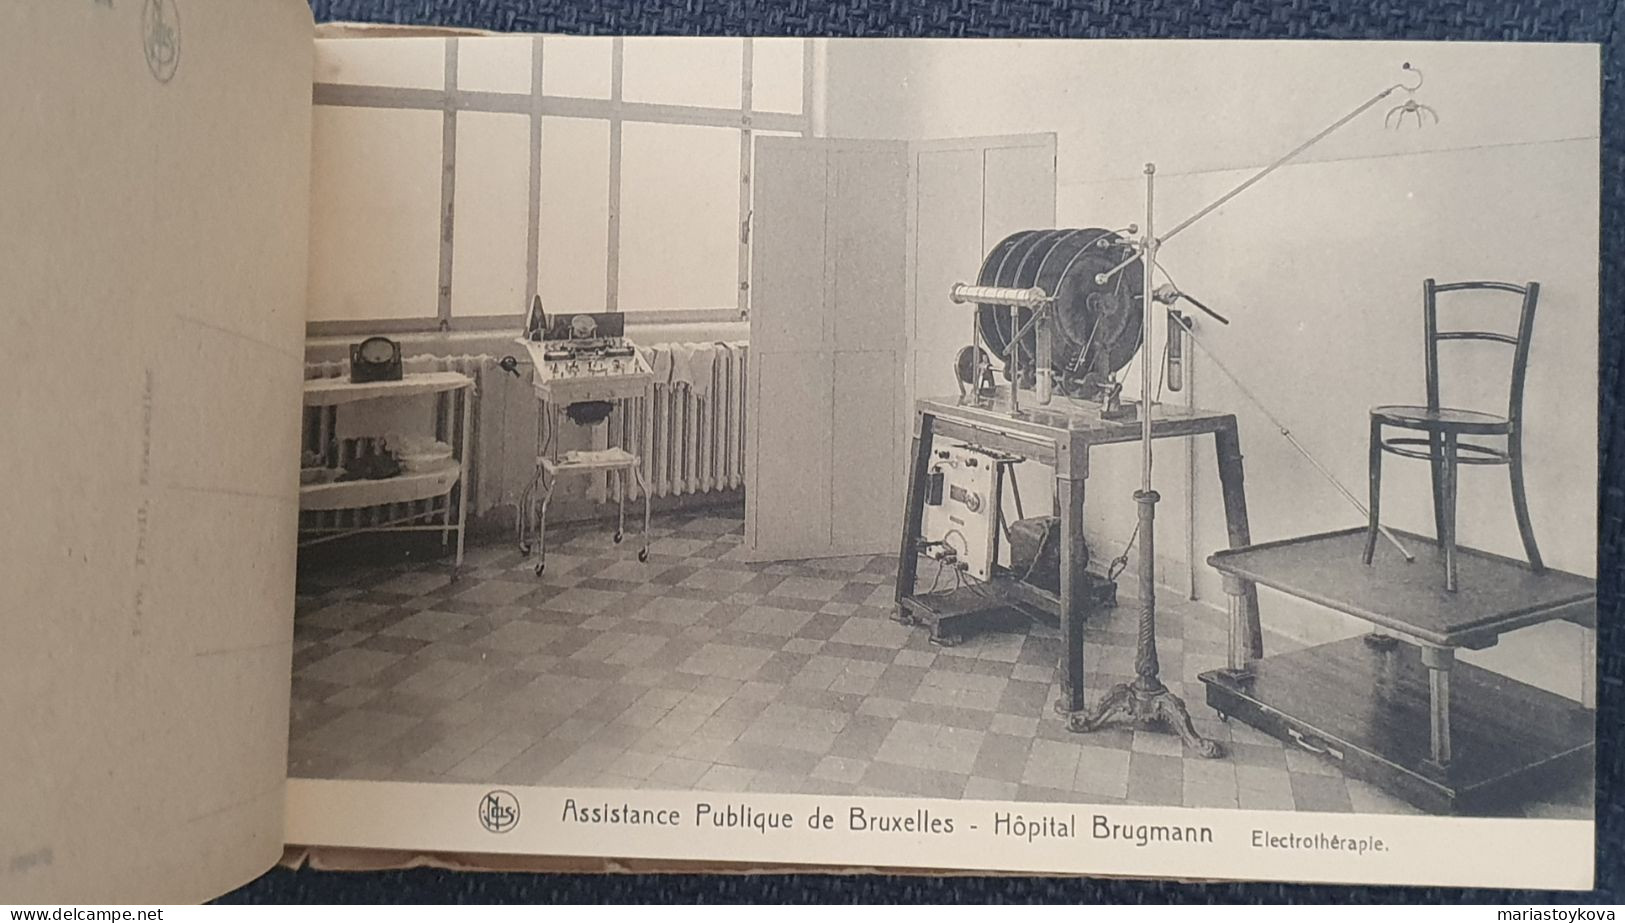 1938. Sammelheftchen mit 26 Postkarten. Assistance Publique de Bruxelles. Hopital Brugmann.